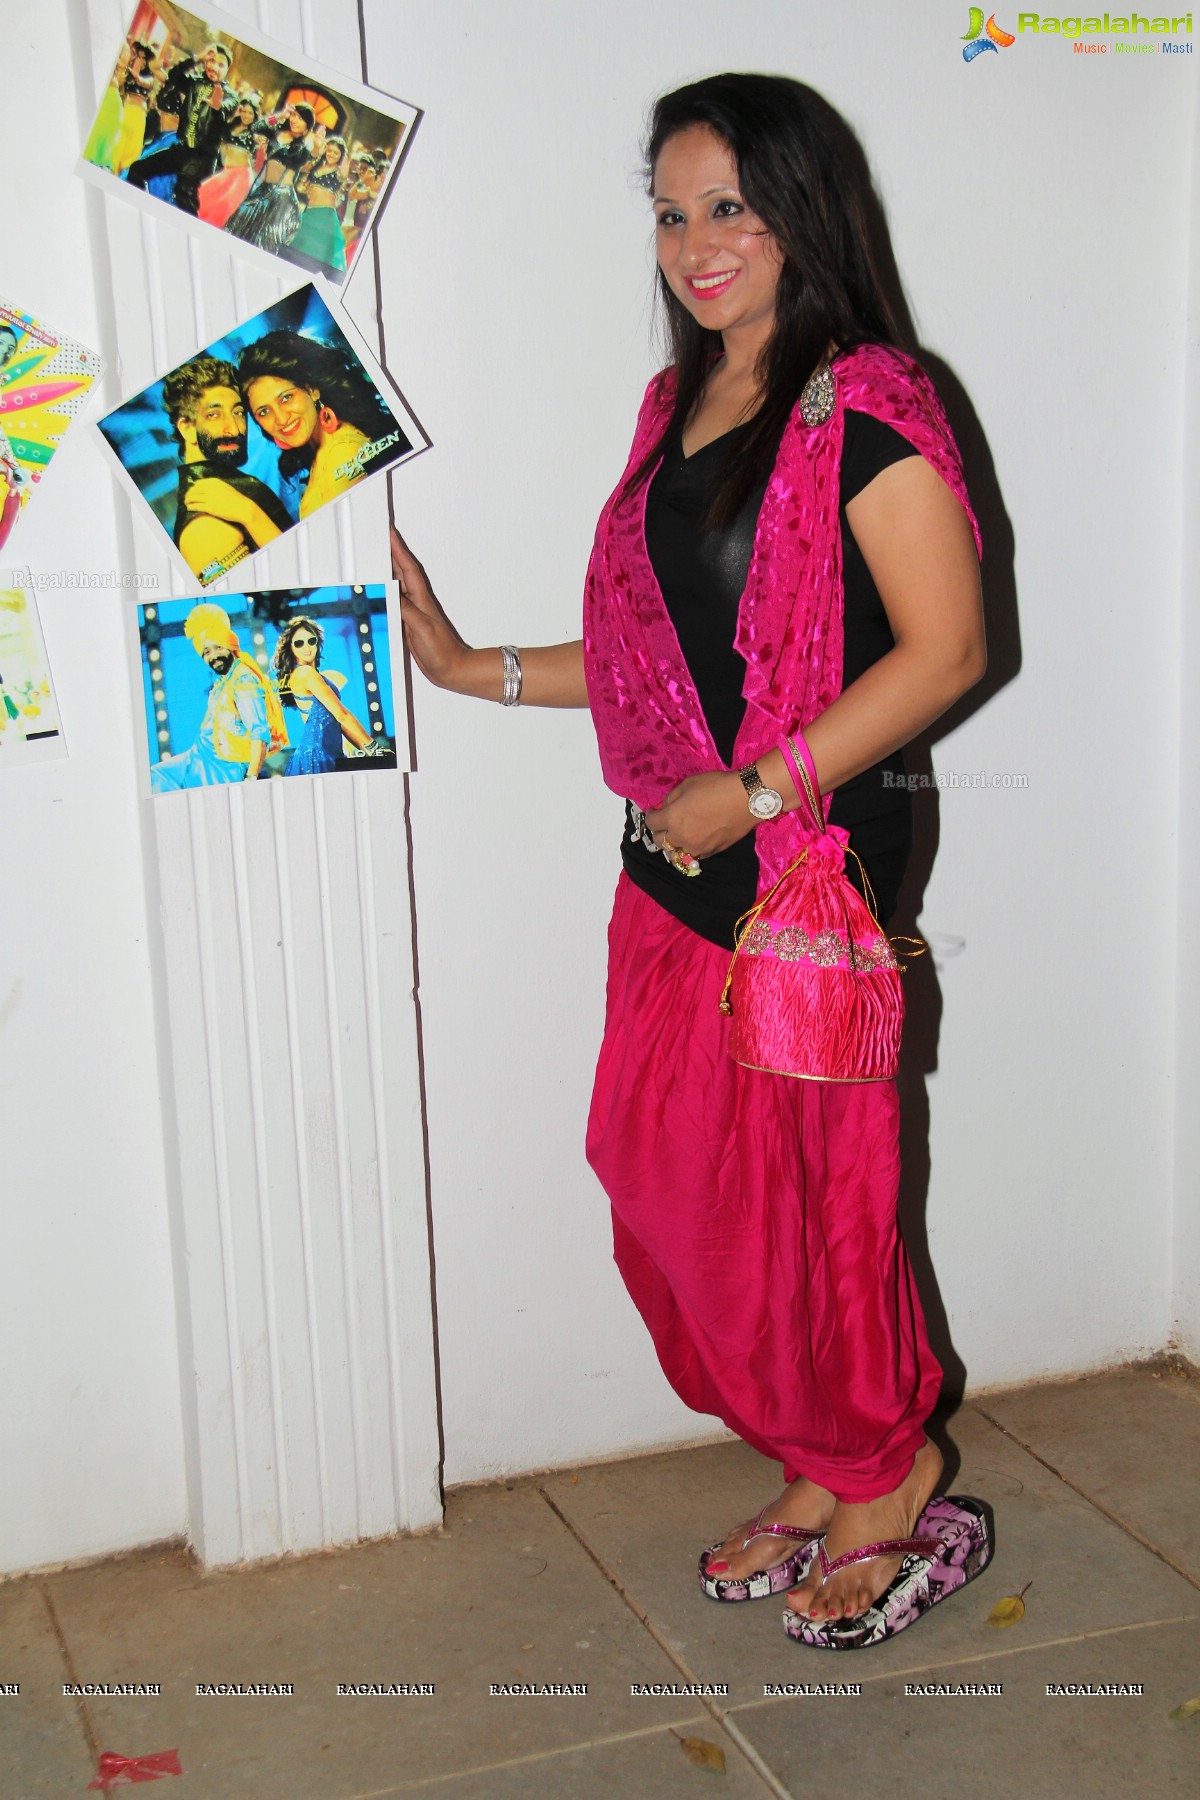 Glitterati 1st Anniversary Celebrations at Ashiana, Hyderabad